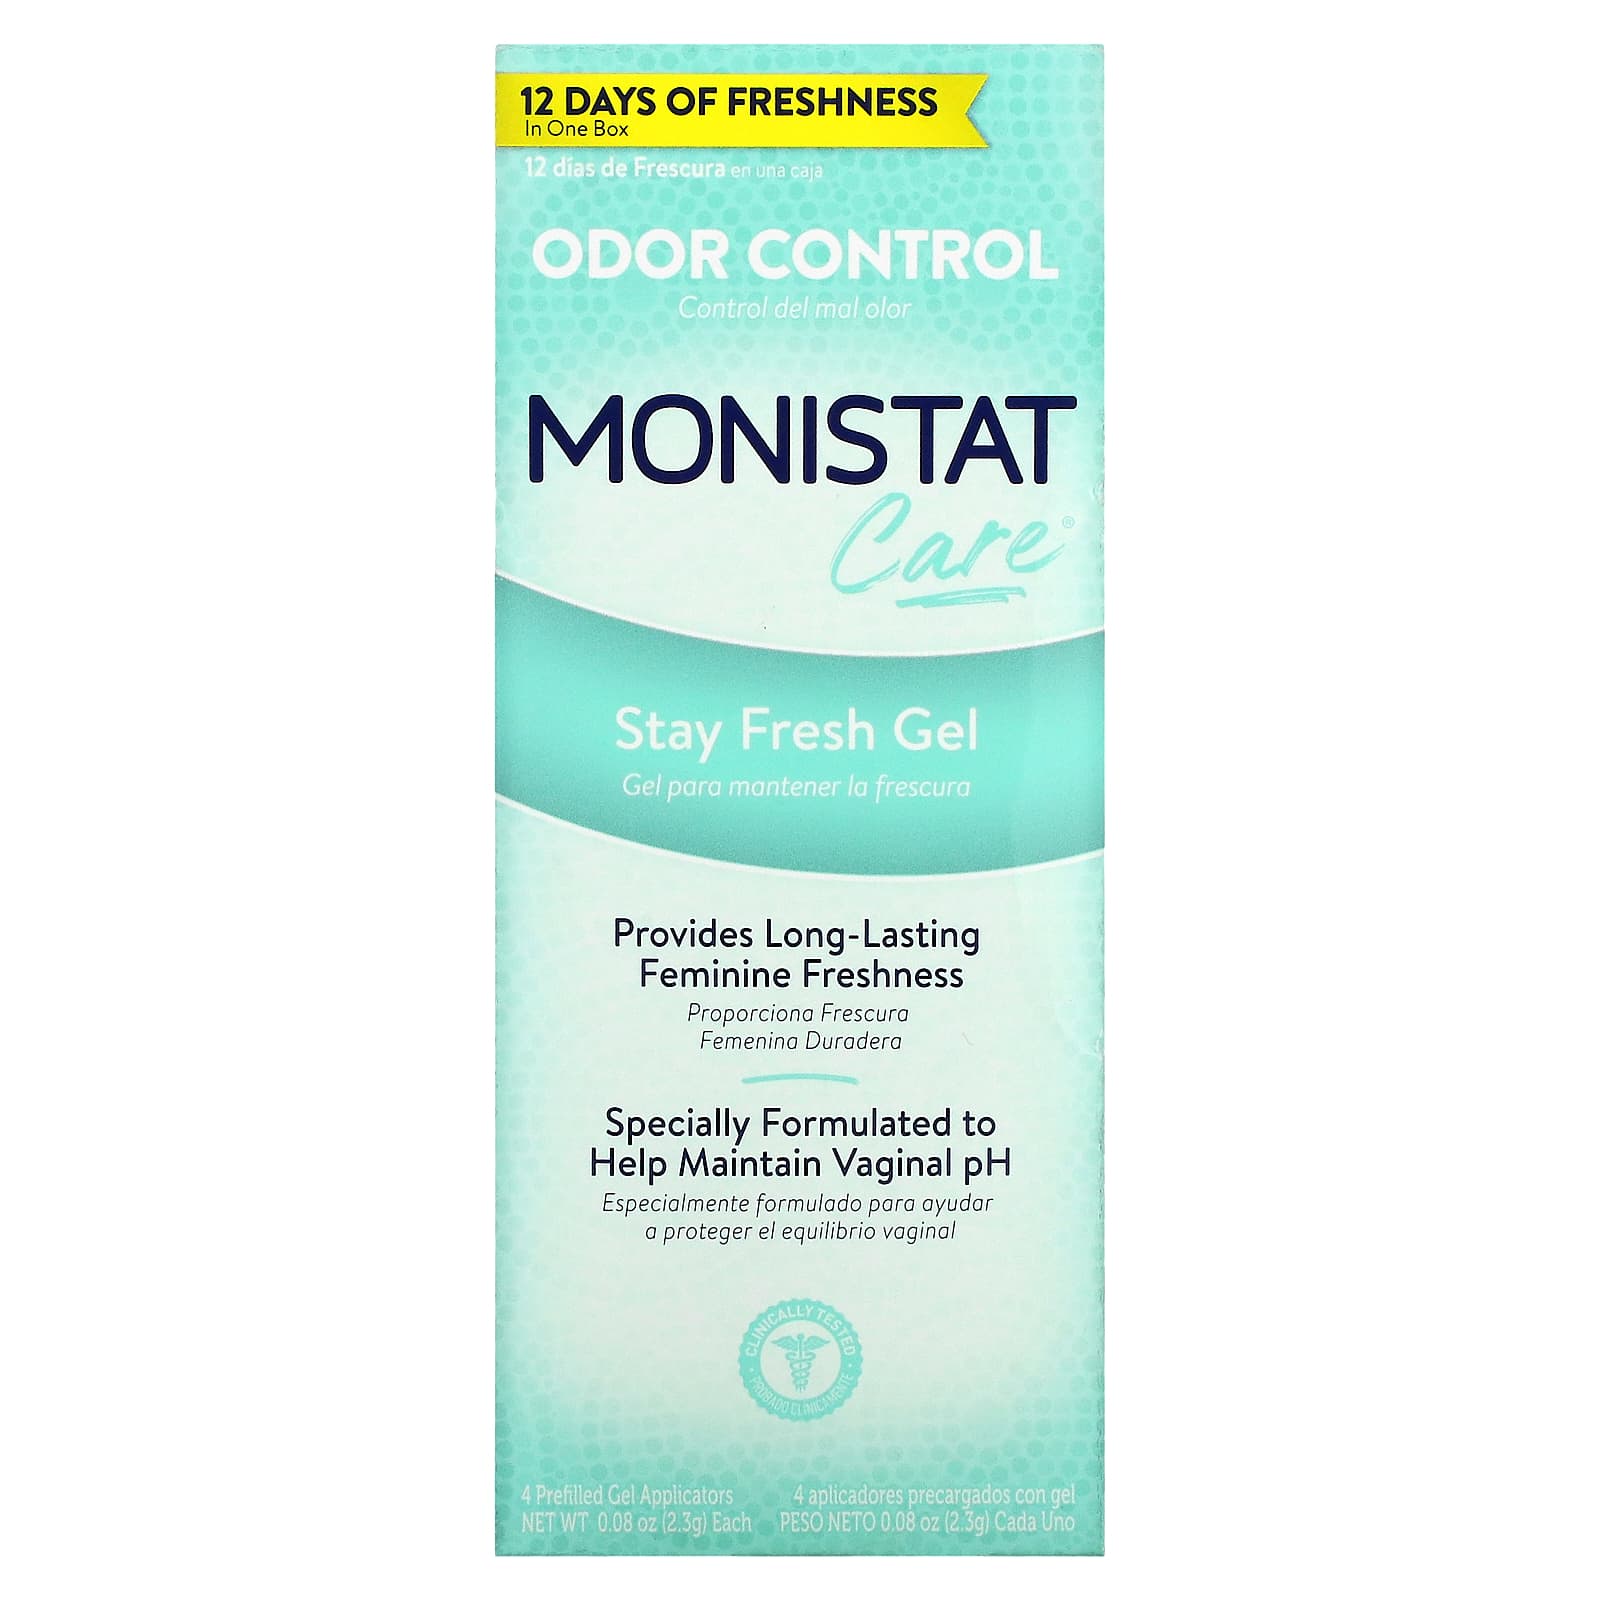 Гель Monistat Stay Fresh, 4 аппликатора по 2,3 г monistat 3 дневный лечебный крем 3 предварительно заполненных аппликатора 5 г 0 18 унции каждый